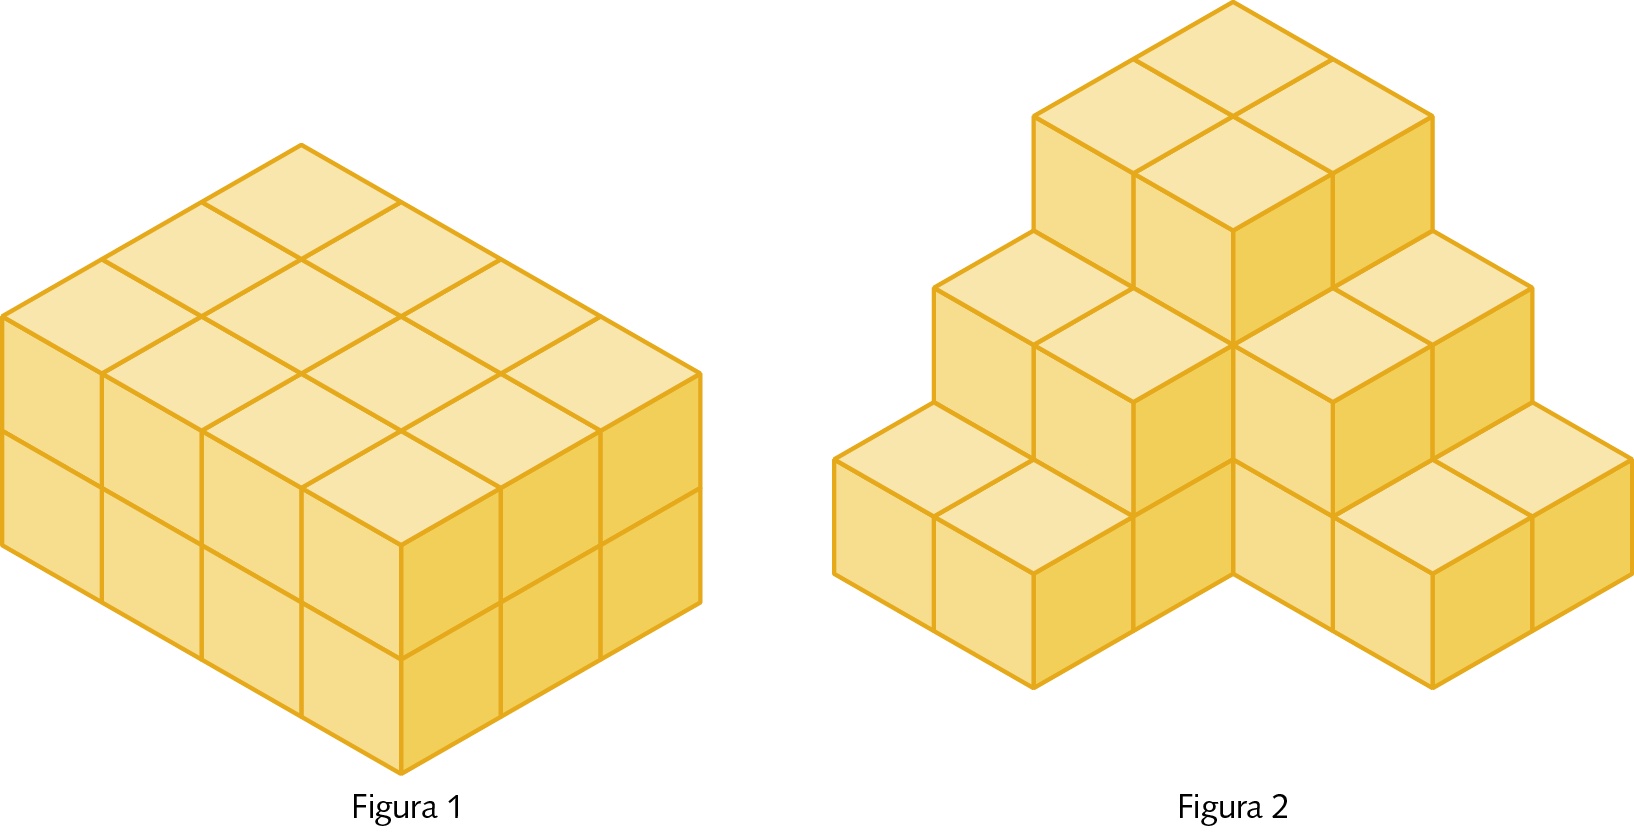 Ilustração. A figura 1 mostra um paralelepípedo de comprimento 4 blocos, largura 3 blocos e altura 2 blocos. A figura 2 mostra uma pilha de blocos dispostos da seguinte forma: na base, temos um paralelepípedo formado por 8 blocos e um paralelepípedo formado por 4 blocos. Sobre essa base temos um paralelepípedo formado por 6 blocos e um paralelepípedo formado por 2 blocos. No topo dessa pilha temos um paralelepípedo formado por 4 blocos.